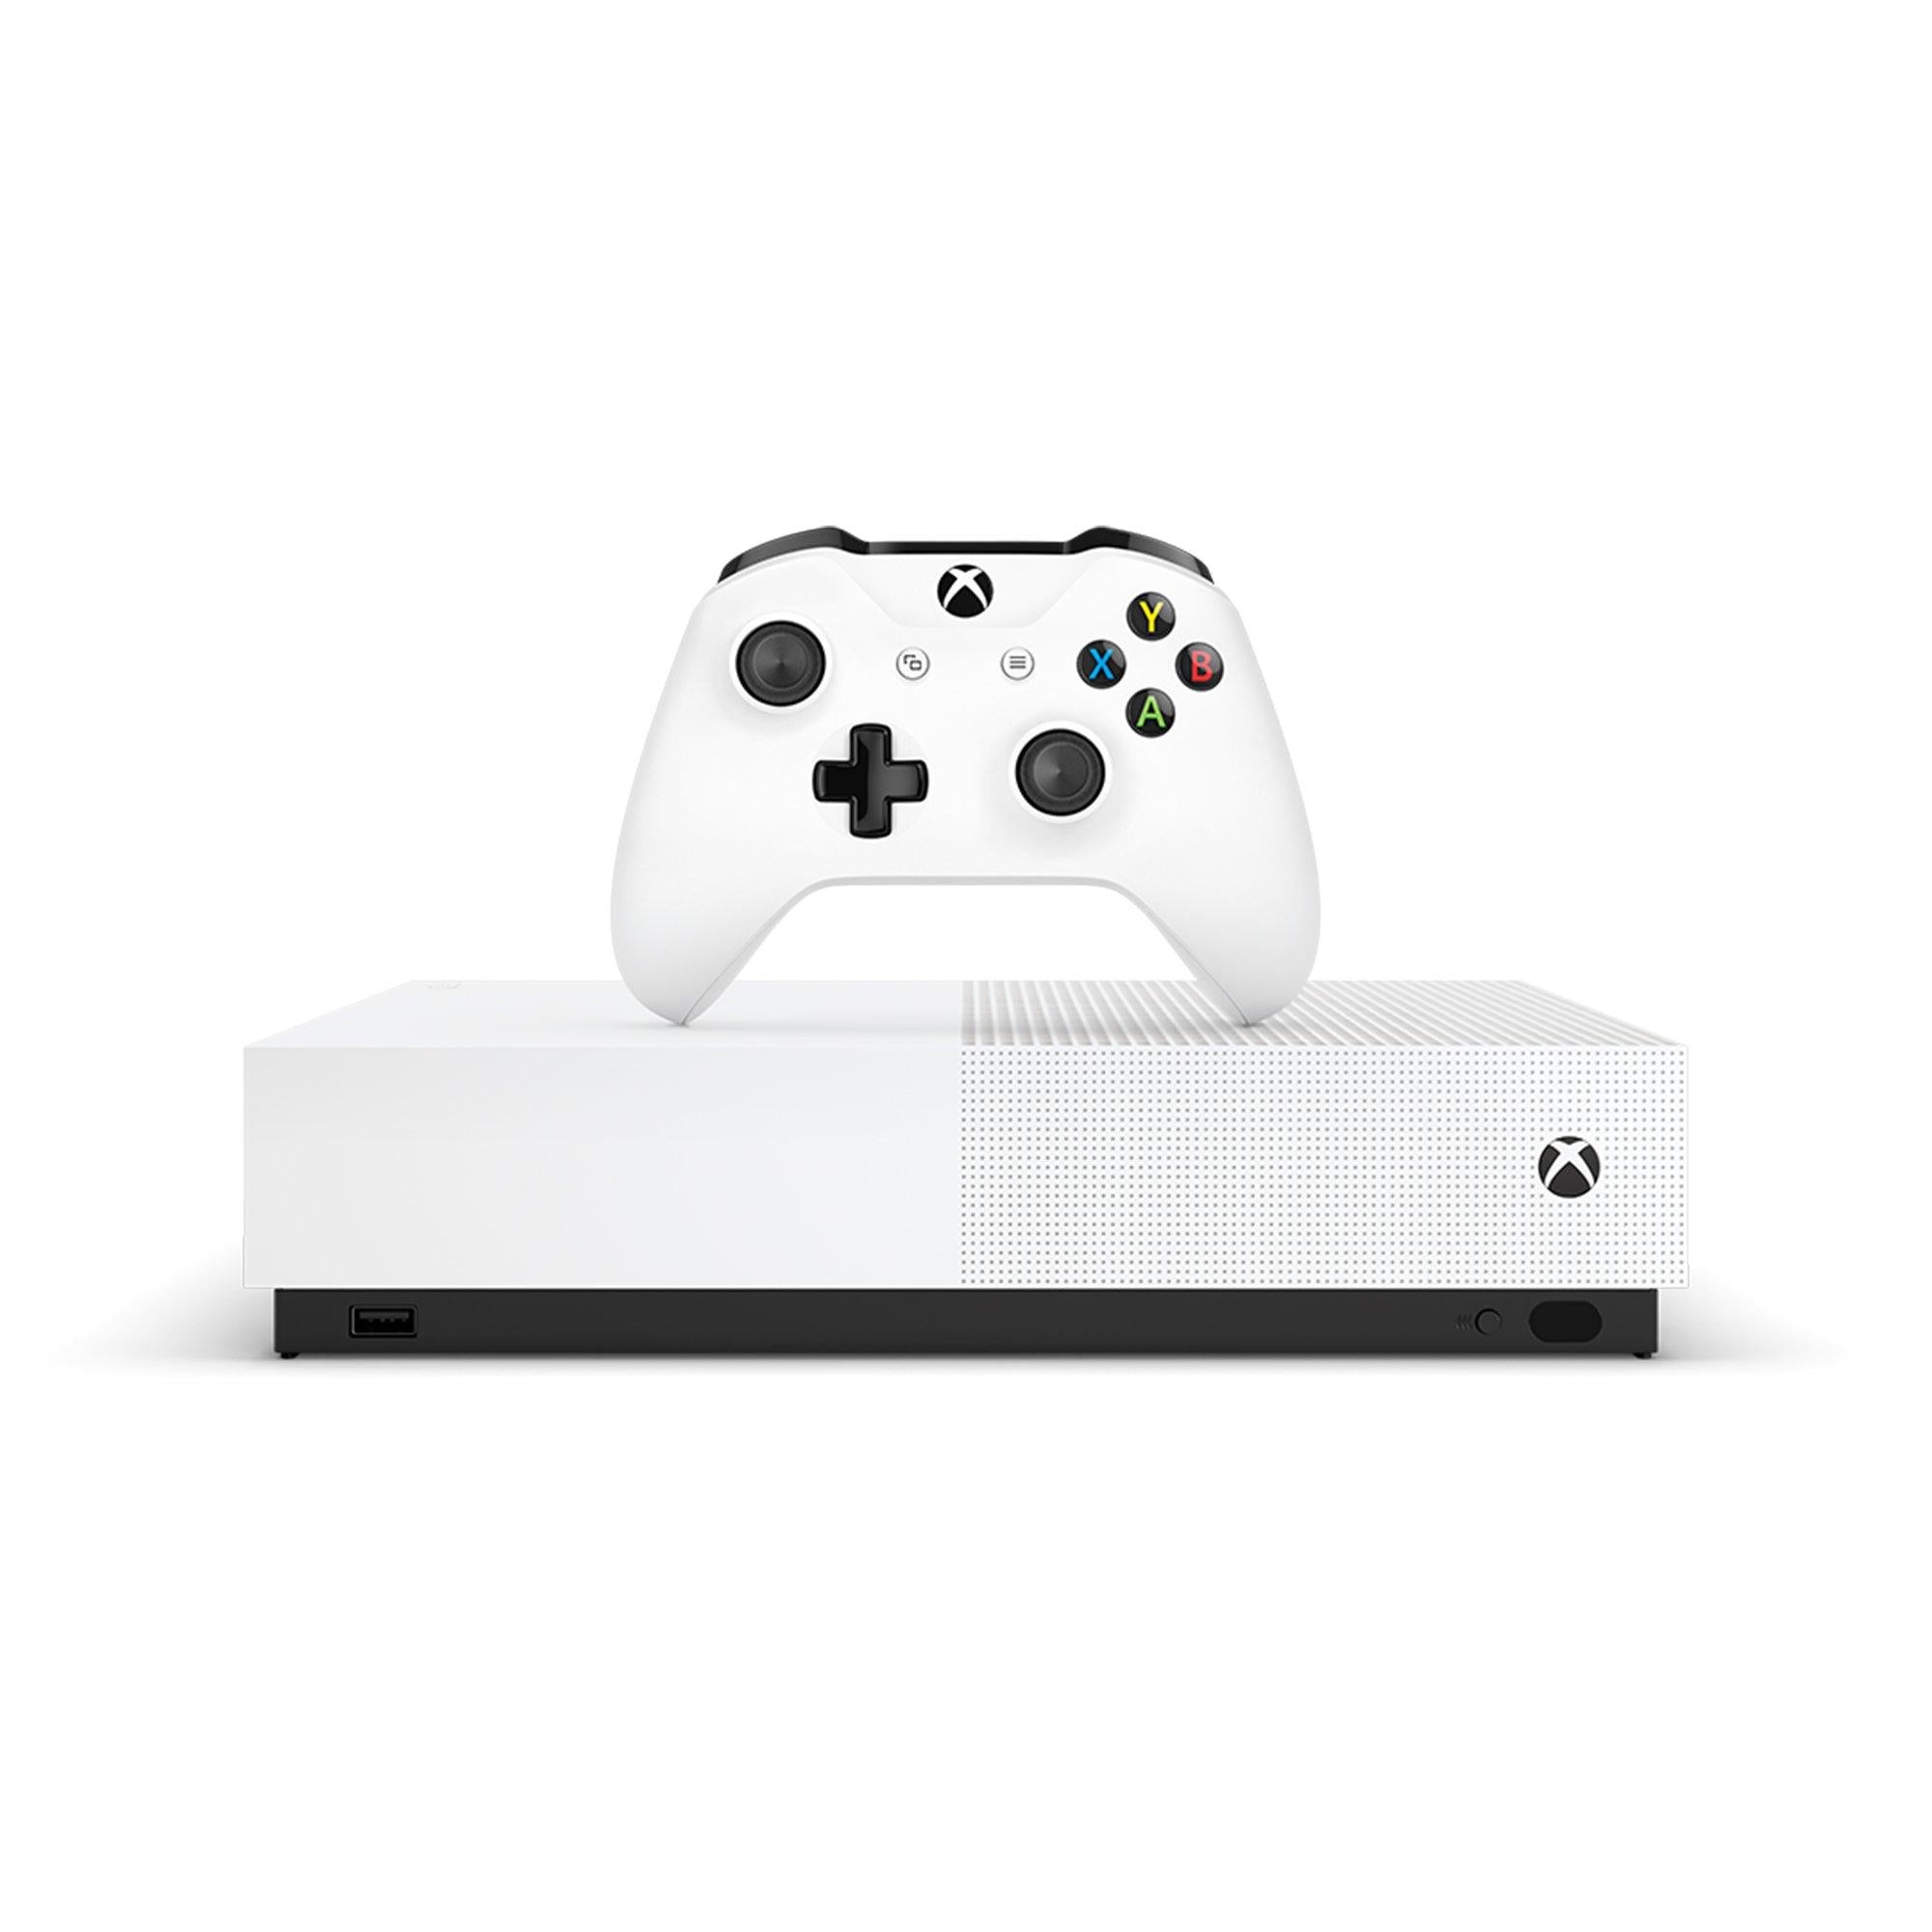 Microsoft Xbox One S System - 1TB